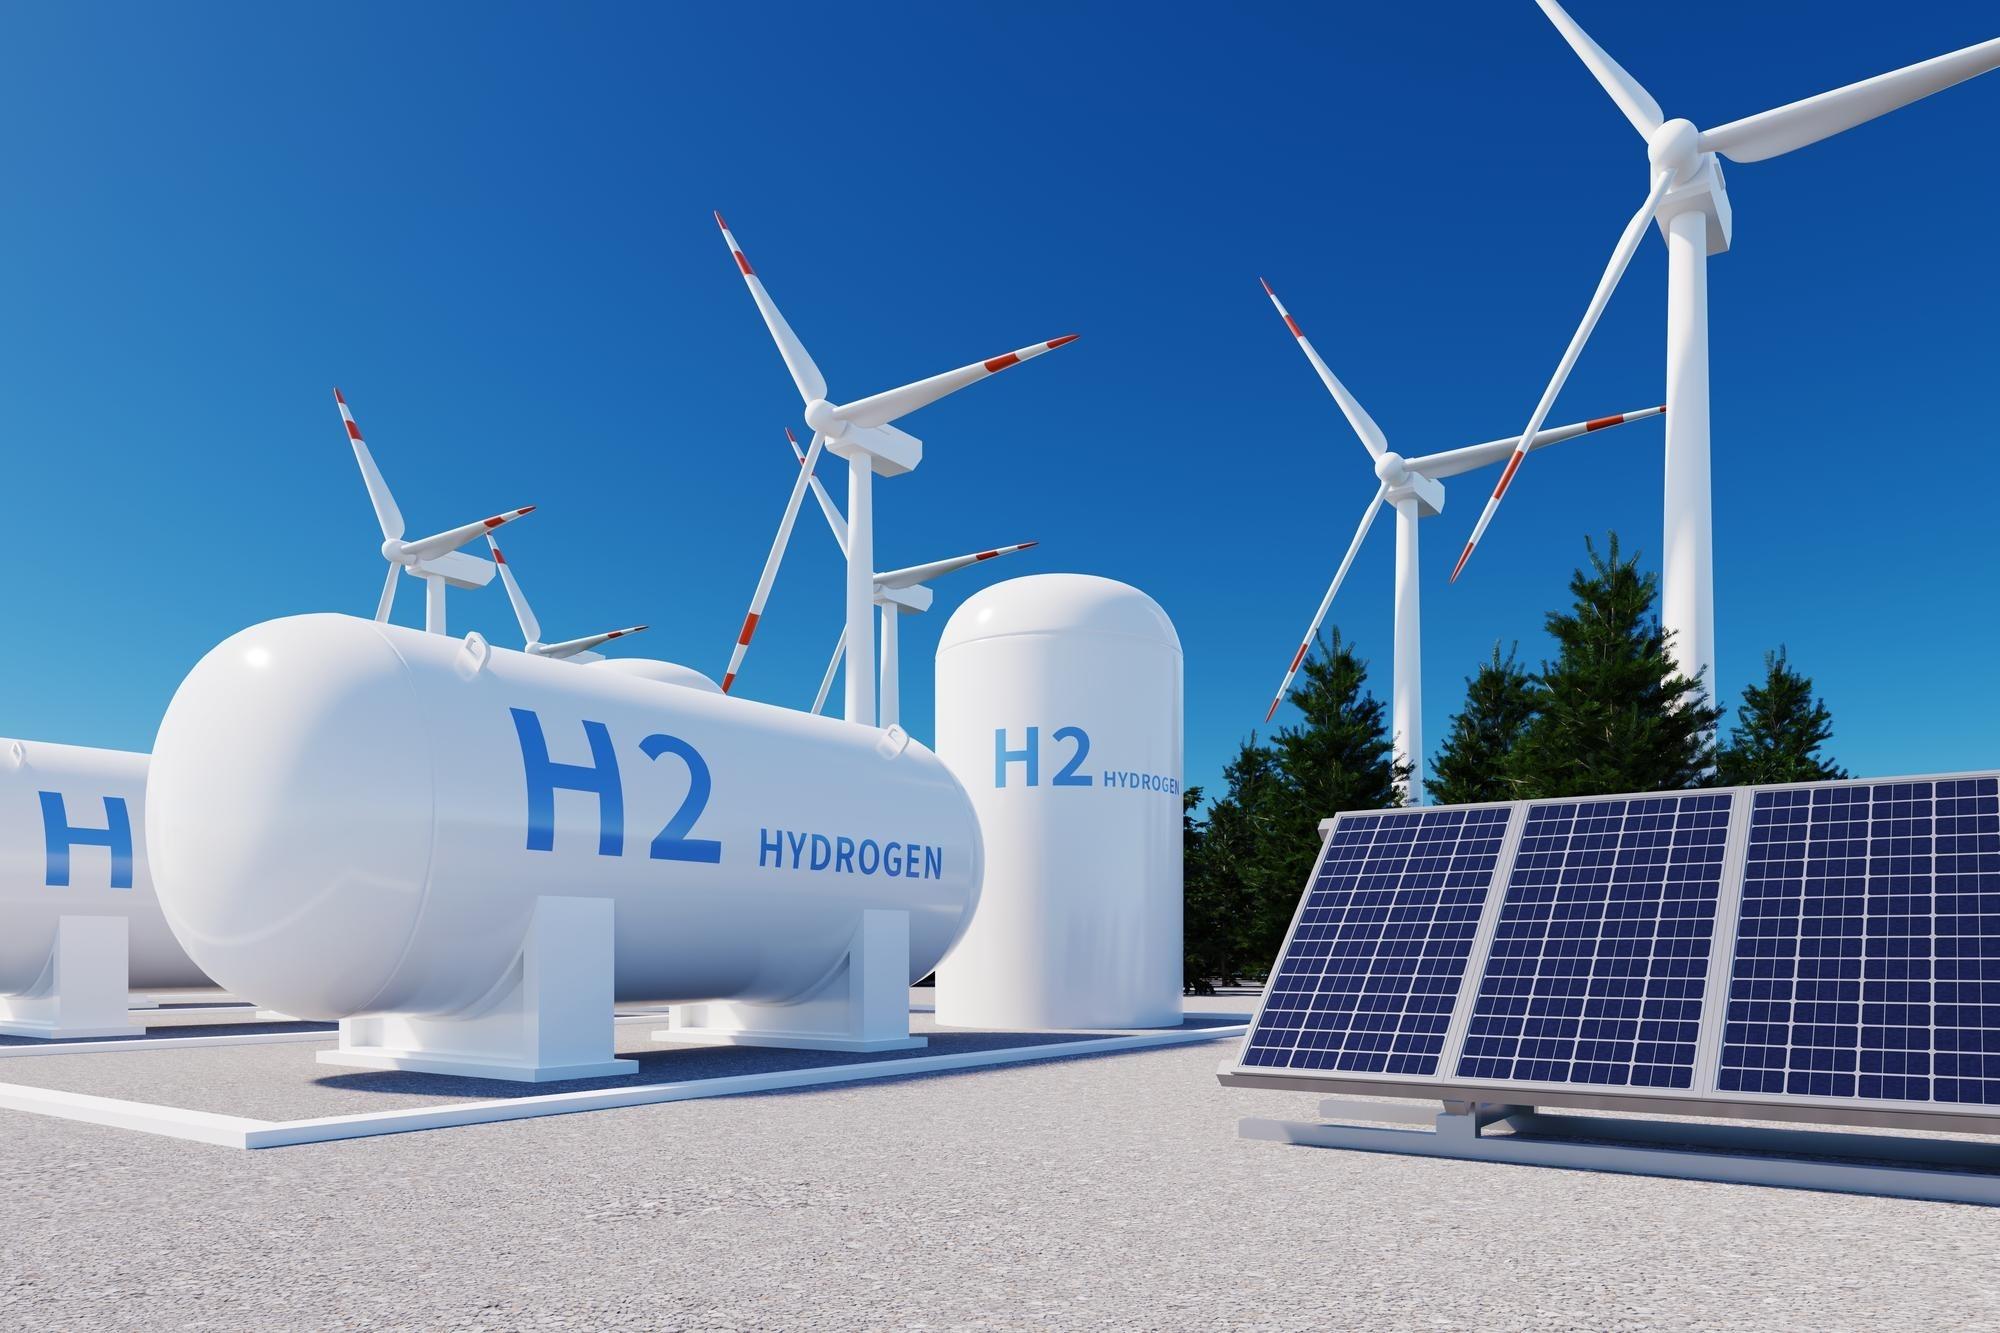 L'hidrogen tindrà un marc regulatori propi a la UE